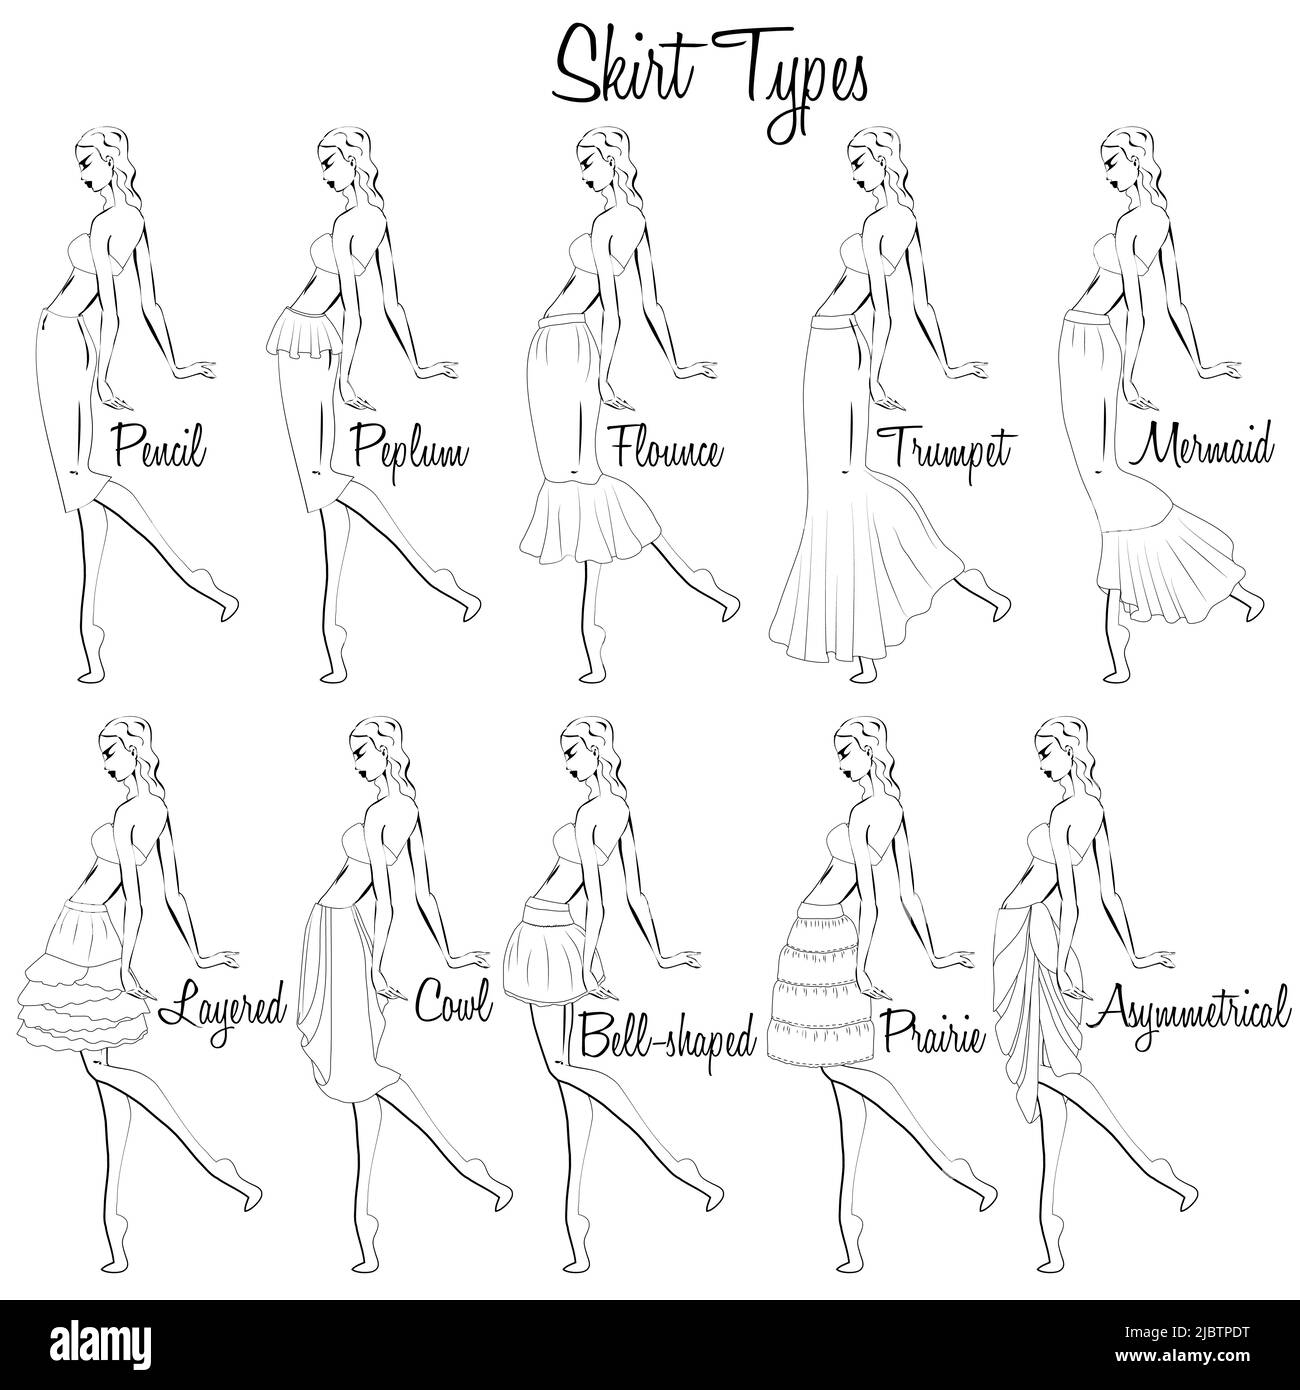 Modelli di gonne. Una rappresentazione visiva degli stili delle gonne sulla figura. Illustrazione del design e della varietà di gonne da donna. Illustrazione Vettoriale